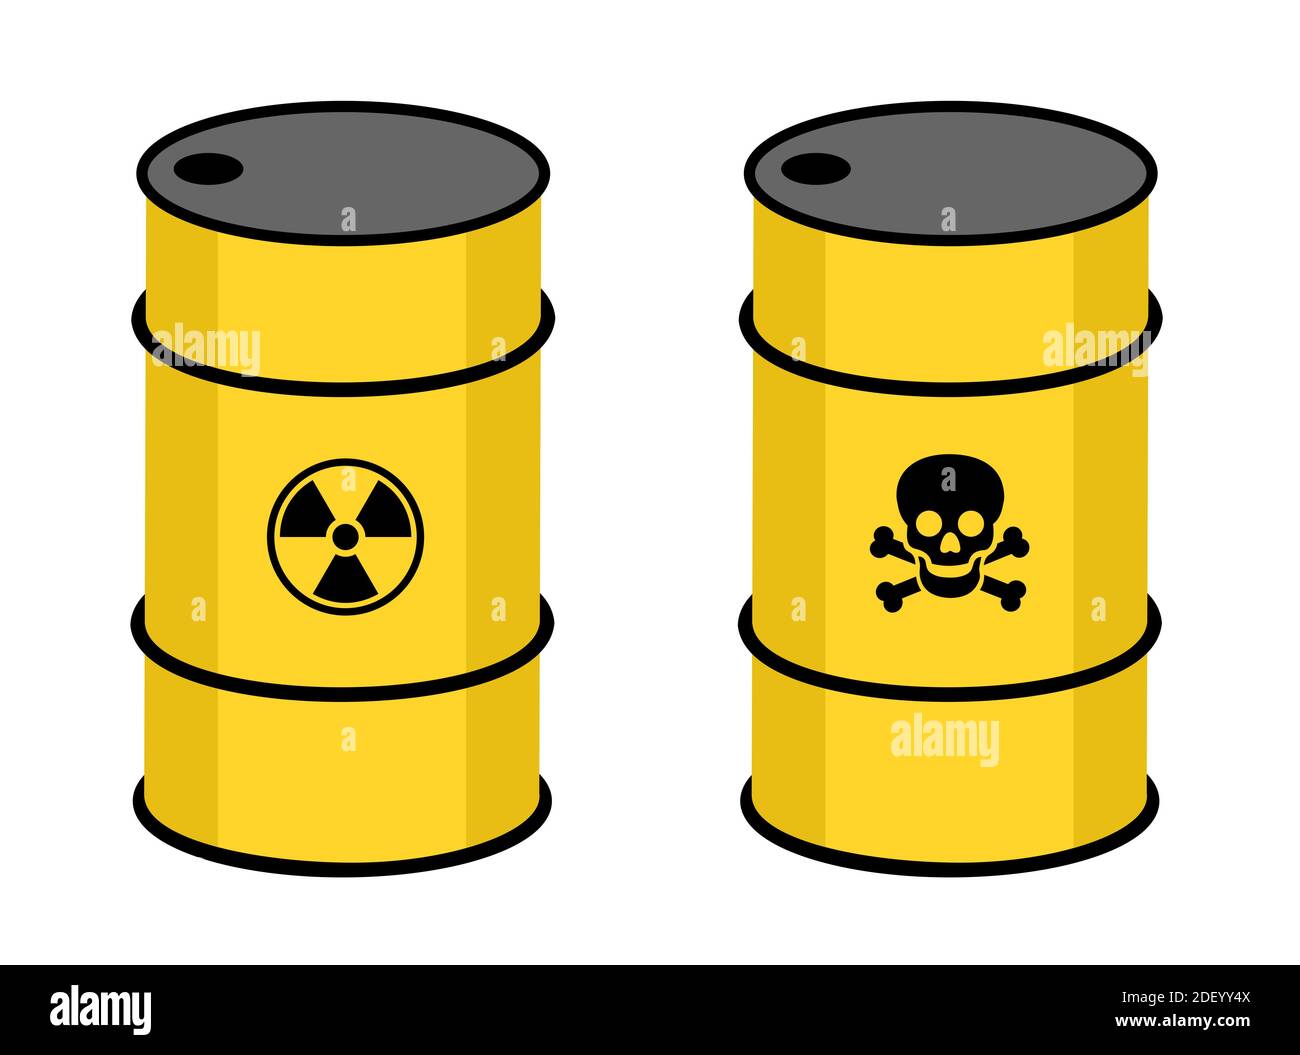 Baril avec substance radioactive et toxique. Symbole de radioactivité et de toxicité sur le contenant jaune. Déchets nucléaires et atomiques ou produits chimiques Banque D'Images